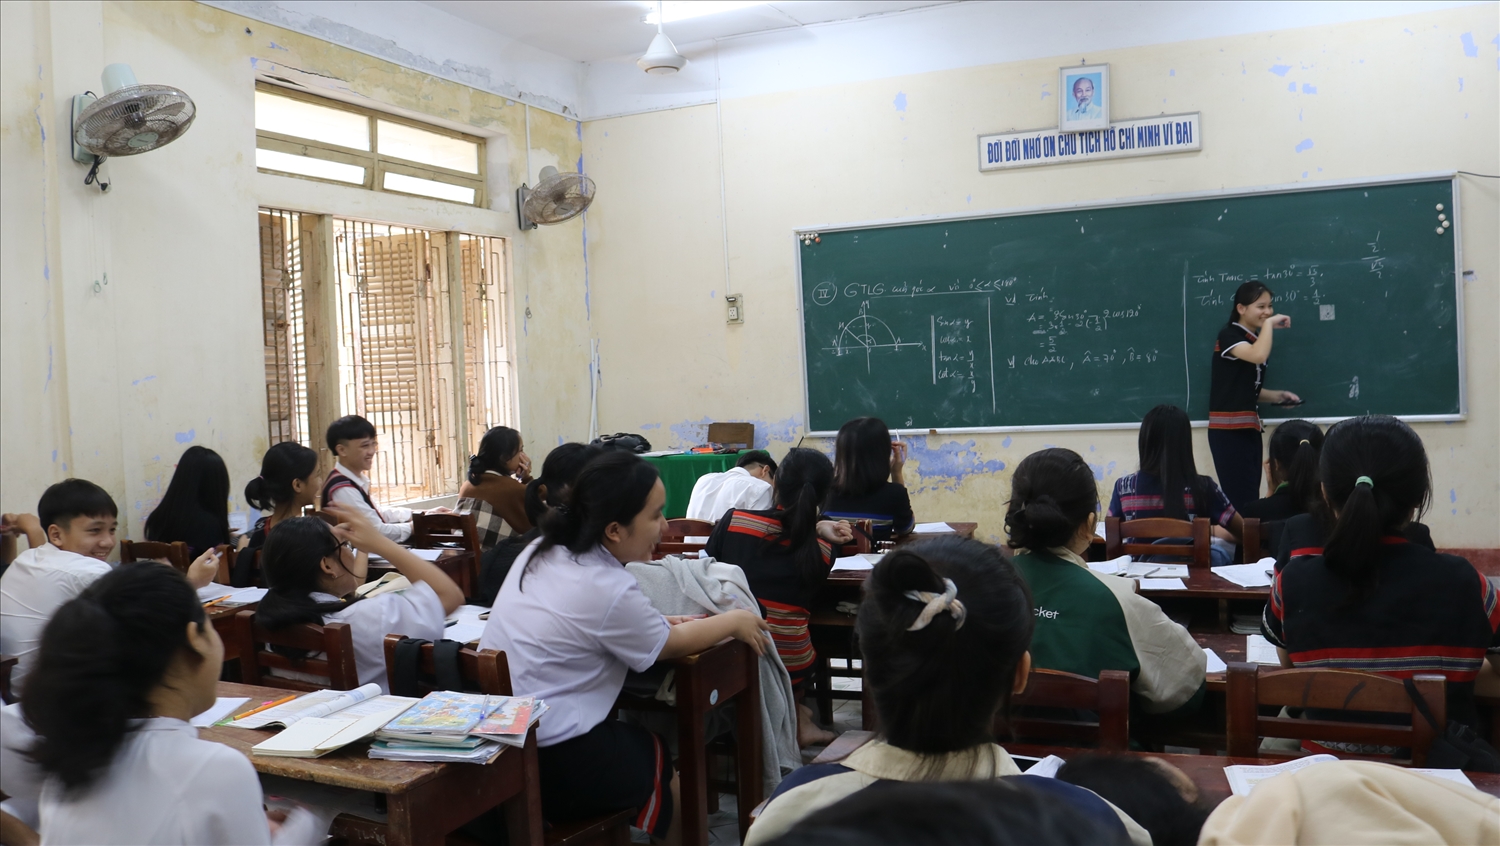 Chương trình MTQG 1719 có ý nghĩa thiết thực trong việc cải thiện giáo dục ở các hiện miền núi tỉnh Quảng Nam